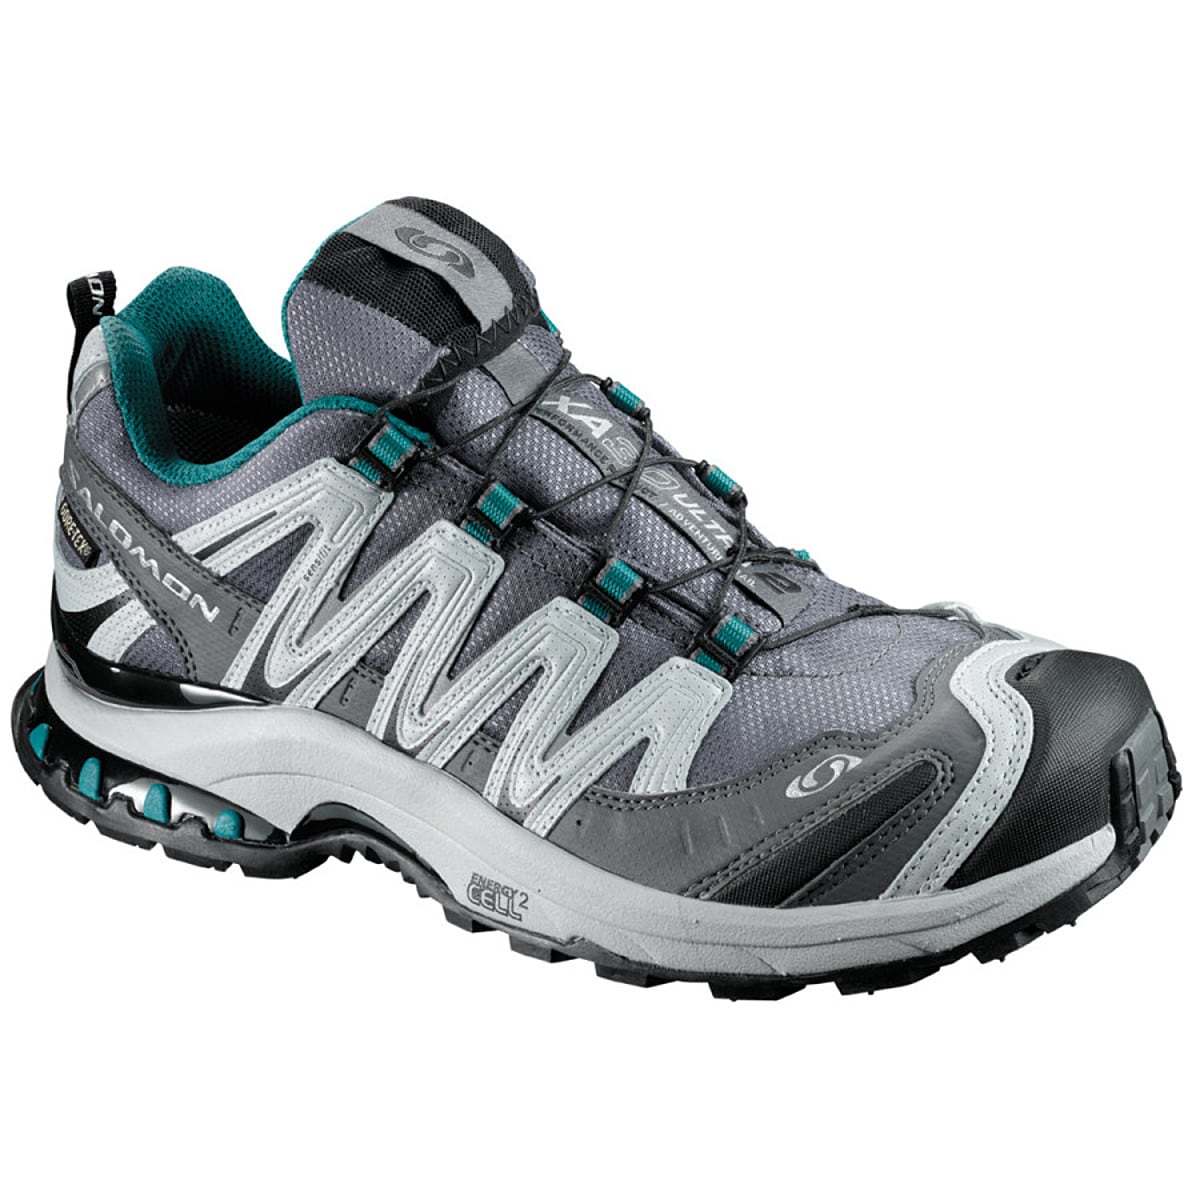 XA Pro 3D Ultra 2 Trail Running Shoe - Women's - Footwear